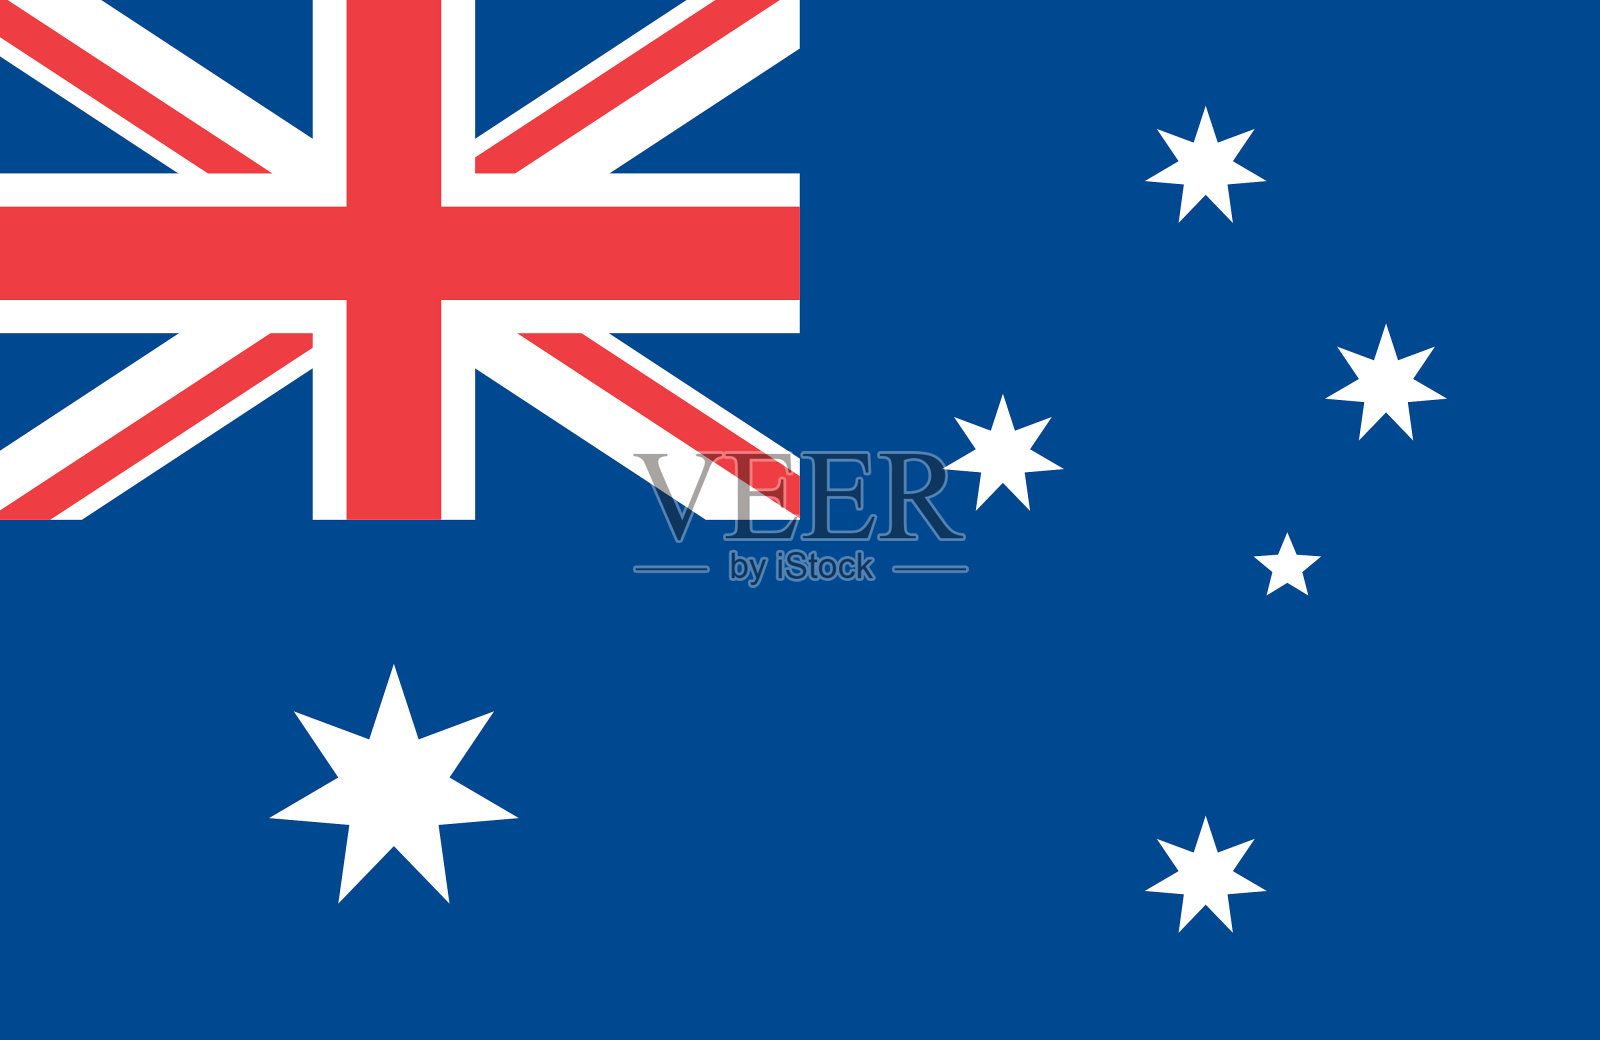 澳大利亚国旗和鼓励澳大利亚日的文字 库存图片. 图片 包括有 国家, 星形, 祝贺, 骄傲, 爱国心, 感激的 - 168807691